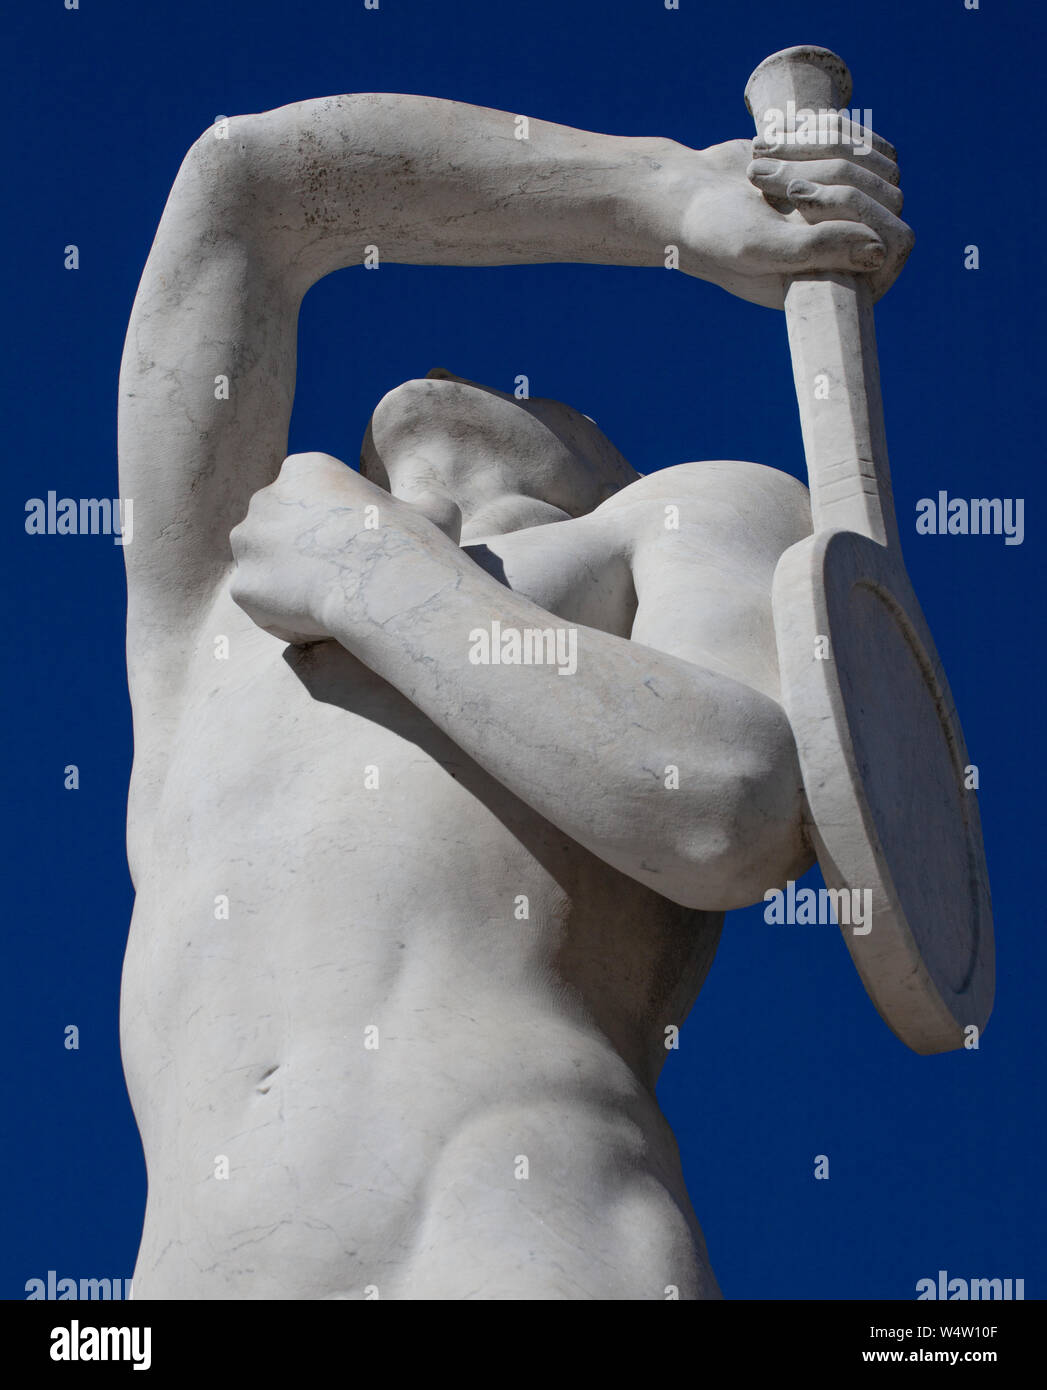 Una statua di pietra di un giocatore di tennis in Stadio dei Marmi (Marmo Stadium) in Roma. La statua ha il suo braccio sollevato per servire contro un Cielo di estate blu. Foto Stock